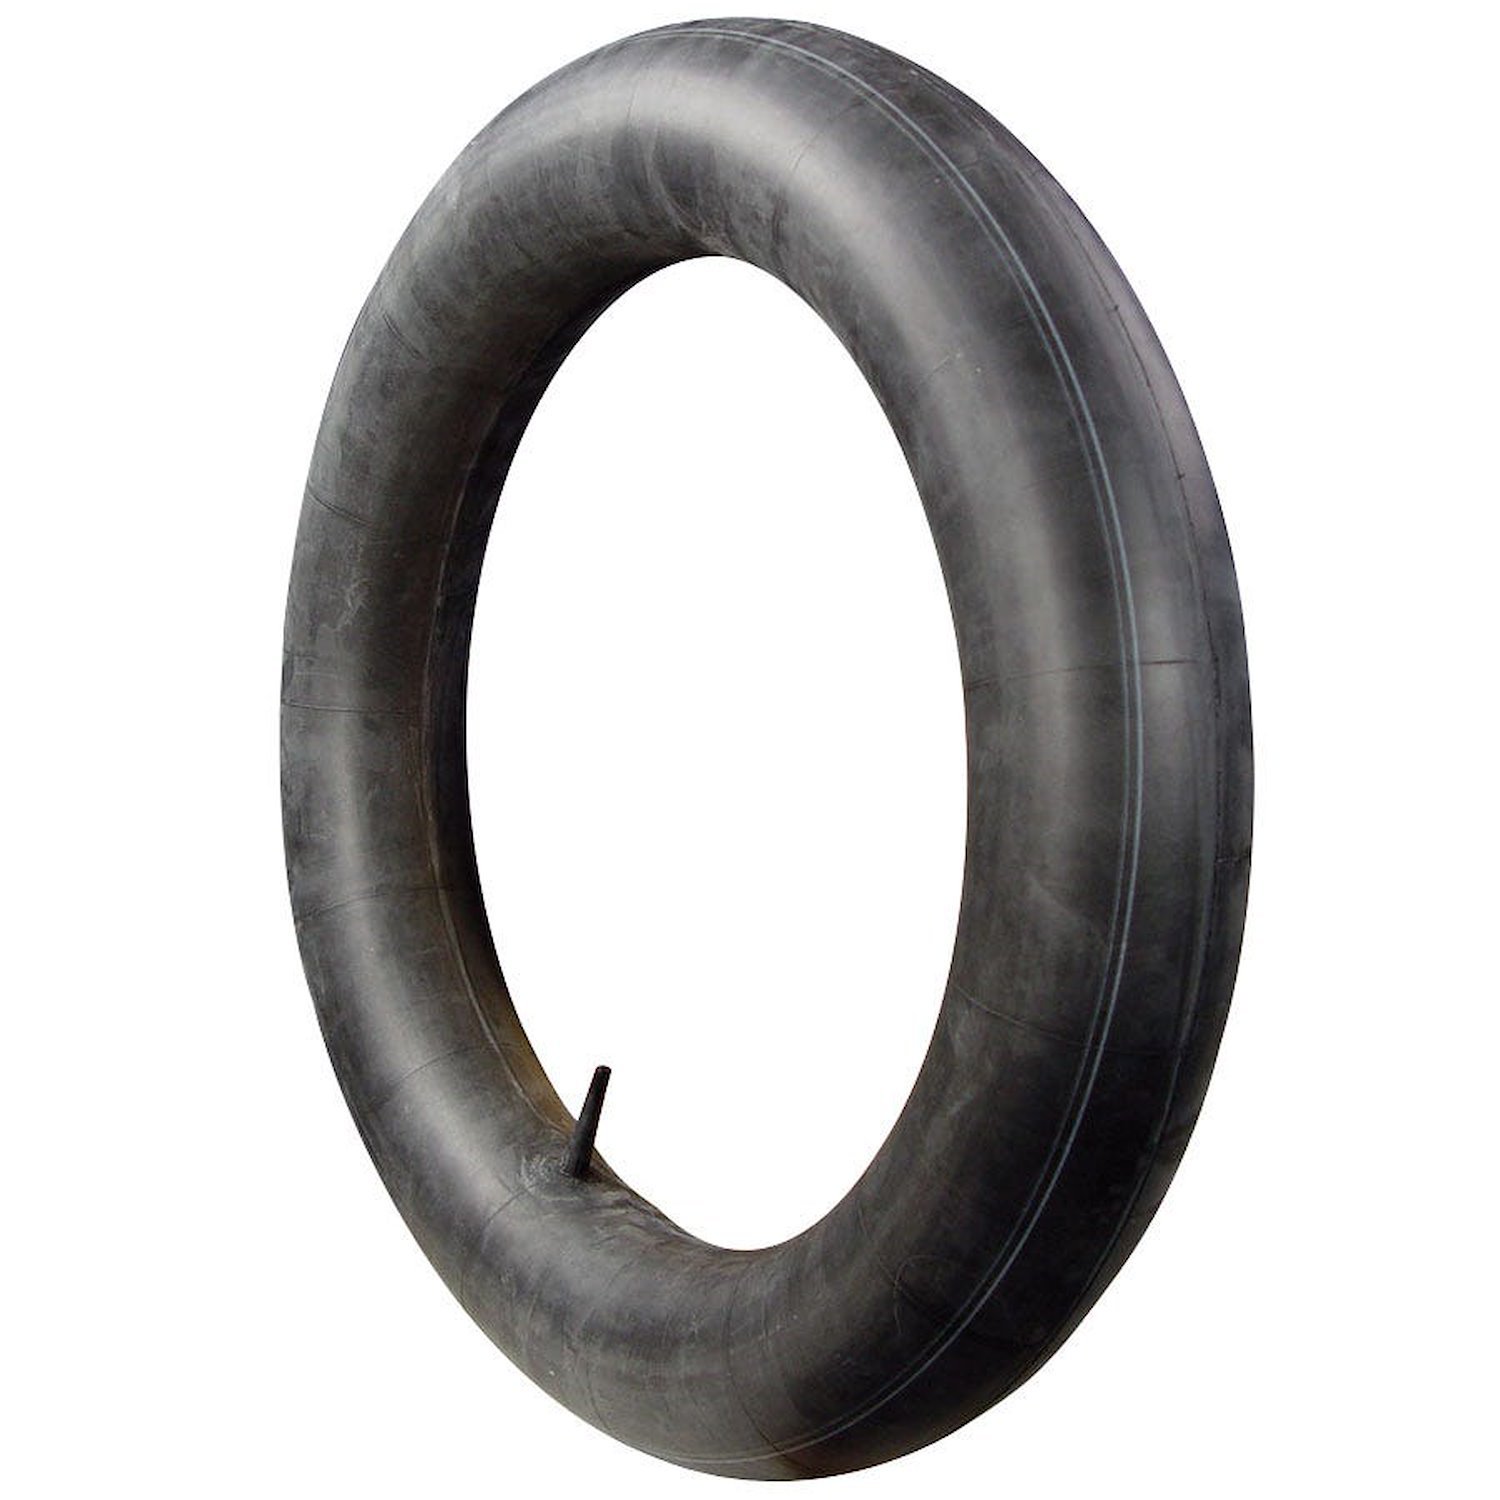 Tire Inner Tube [700R16, 825R16]